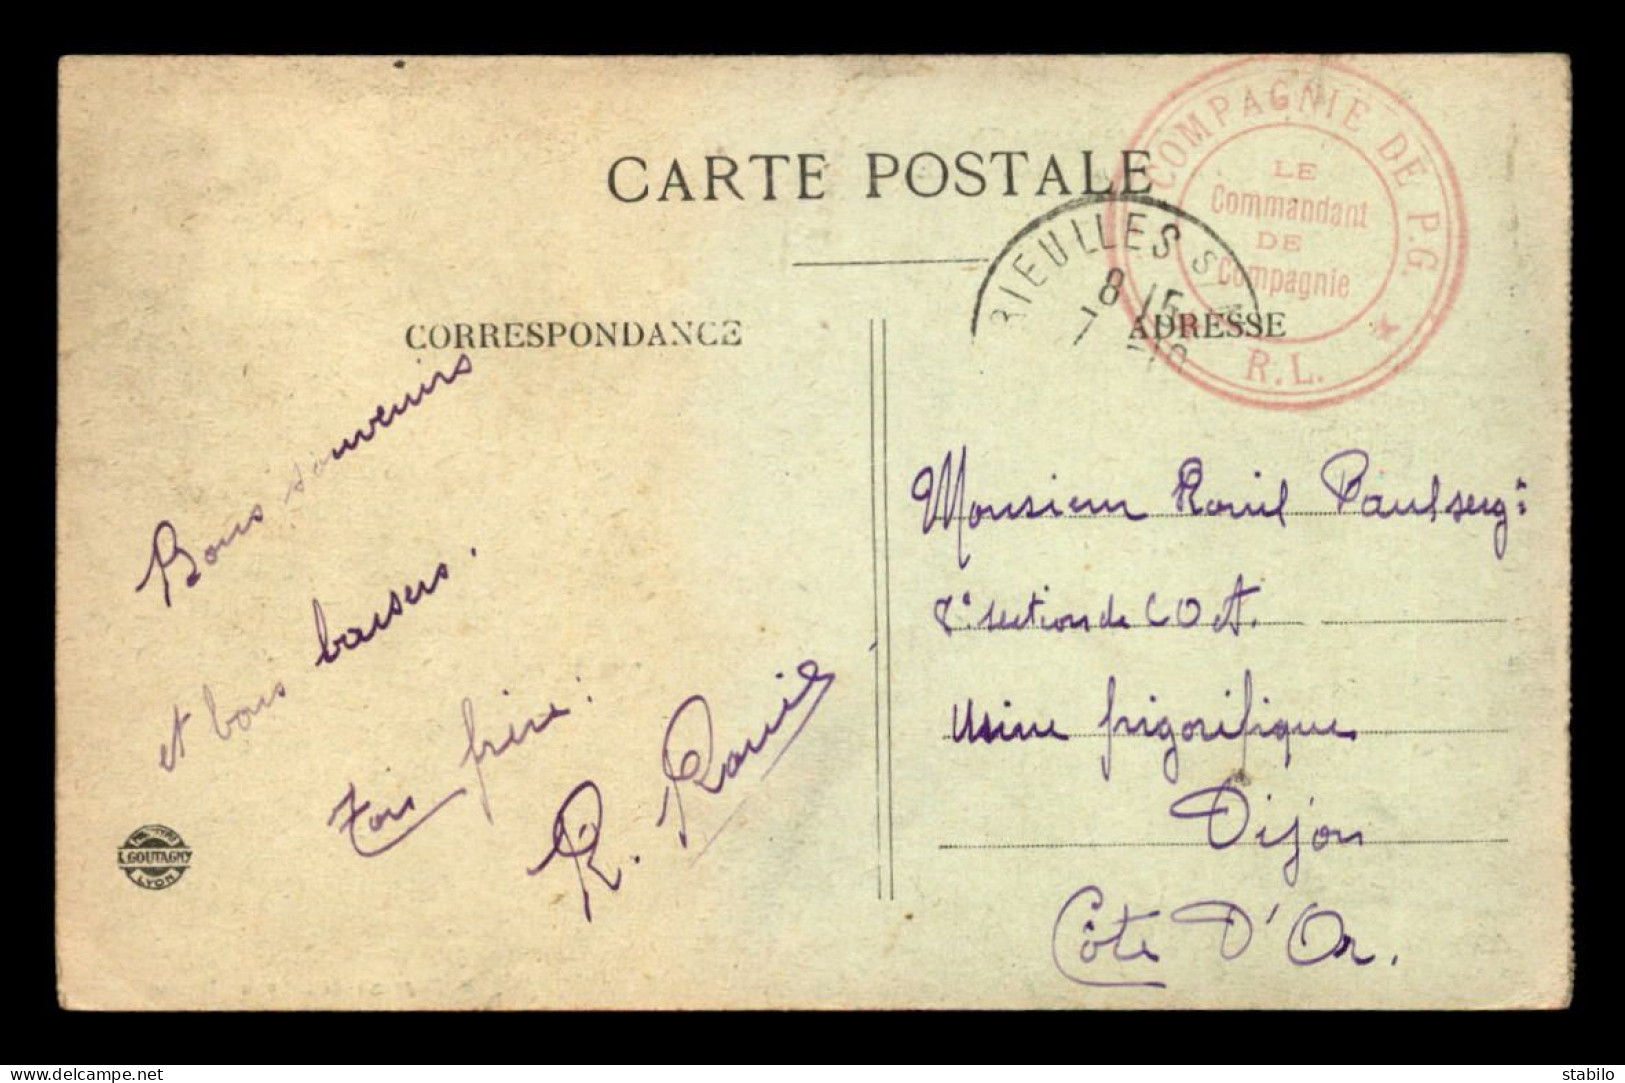  CACHET DU COMMANDANT DE COMPAGNIE DE PRISONNIERS DE GUERRE R.L AVEC CACHET DE BRIEULLES/MEUSE - Guerre De 1914-18